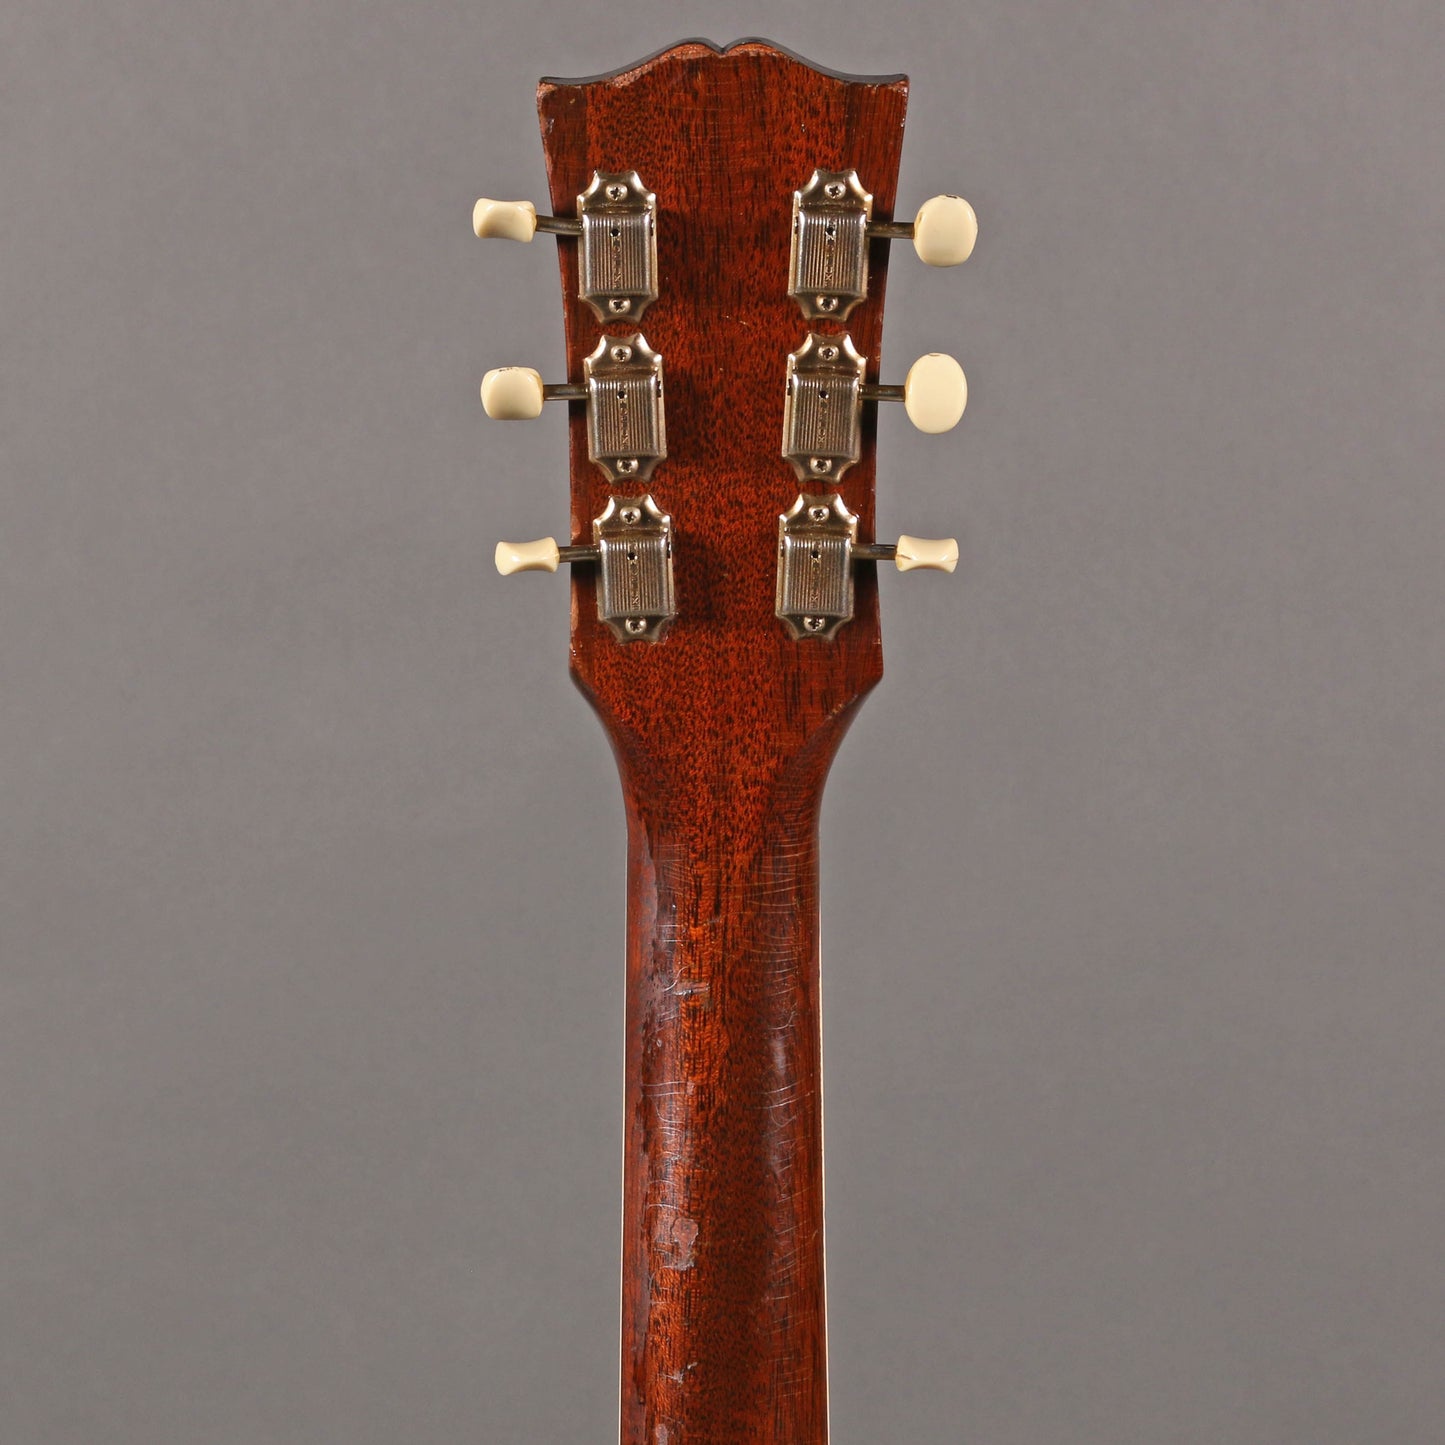 1960 Gibson ES-330